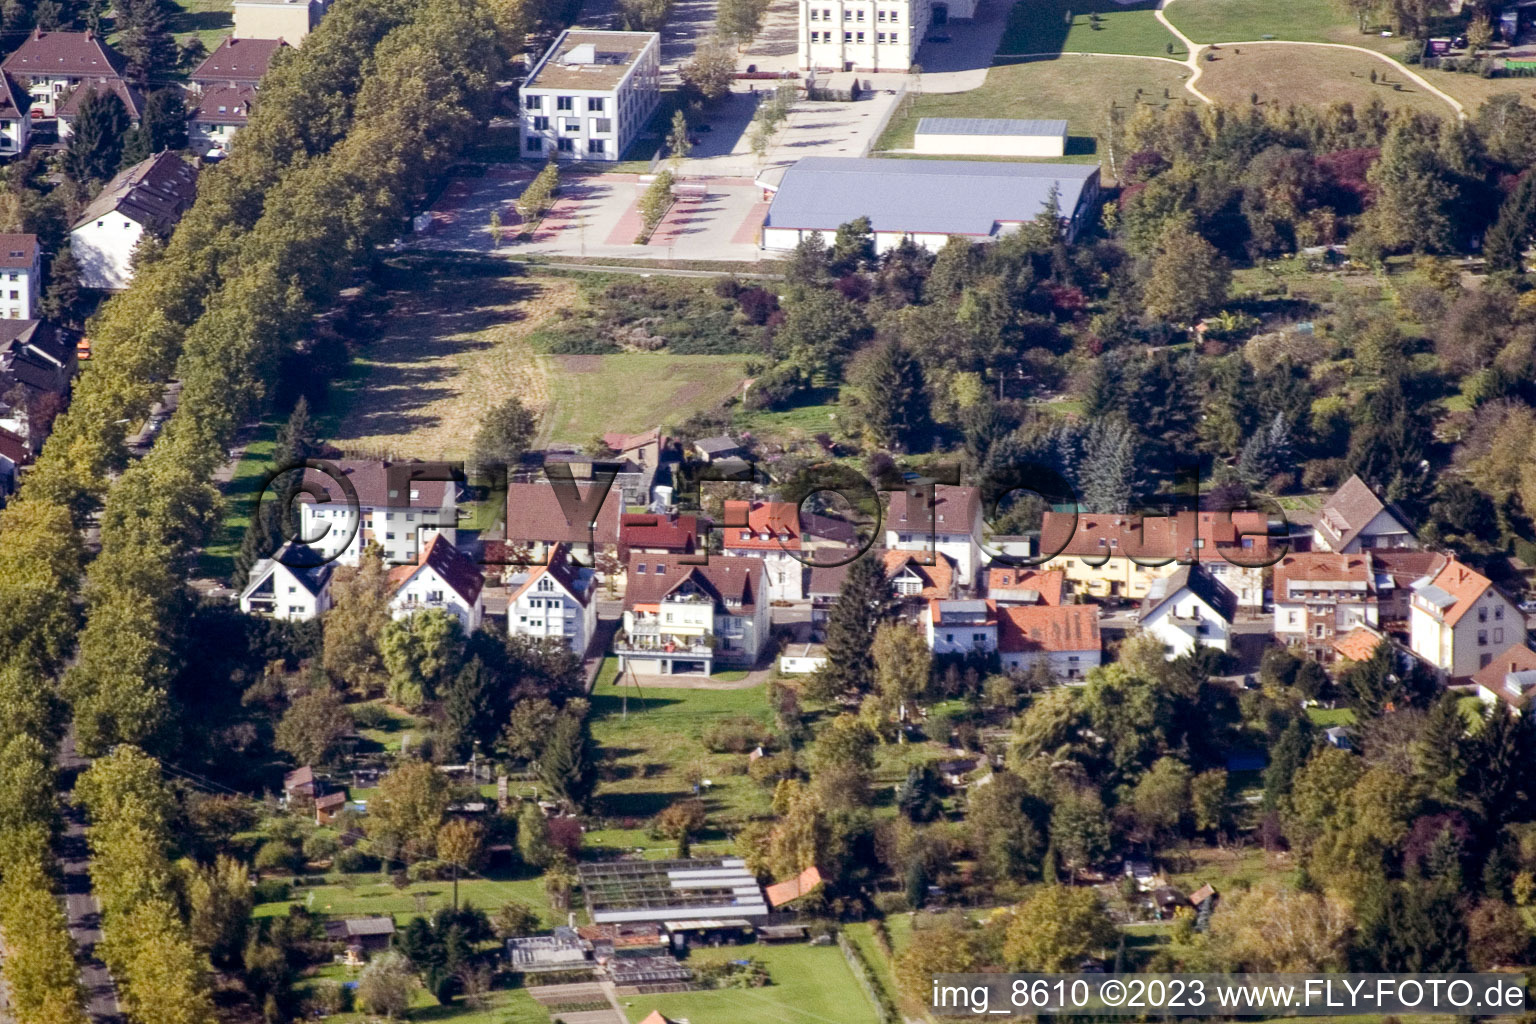 Ortsteil Durlach in Karlsruhe im Bundesland Baden-Württemberg, Deutschland aus der Drohnenperspektive